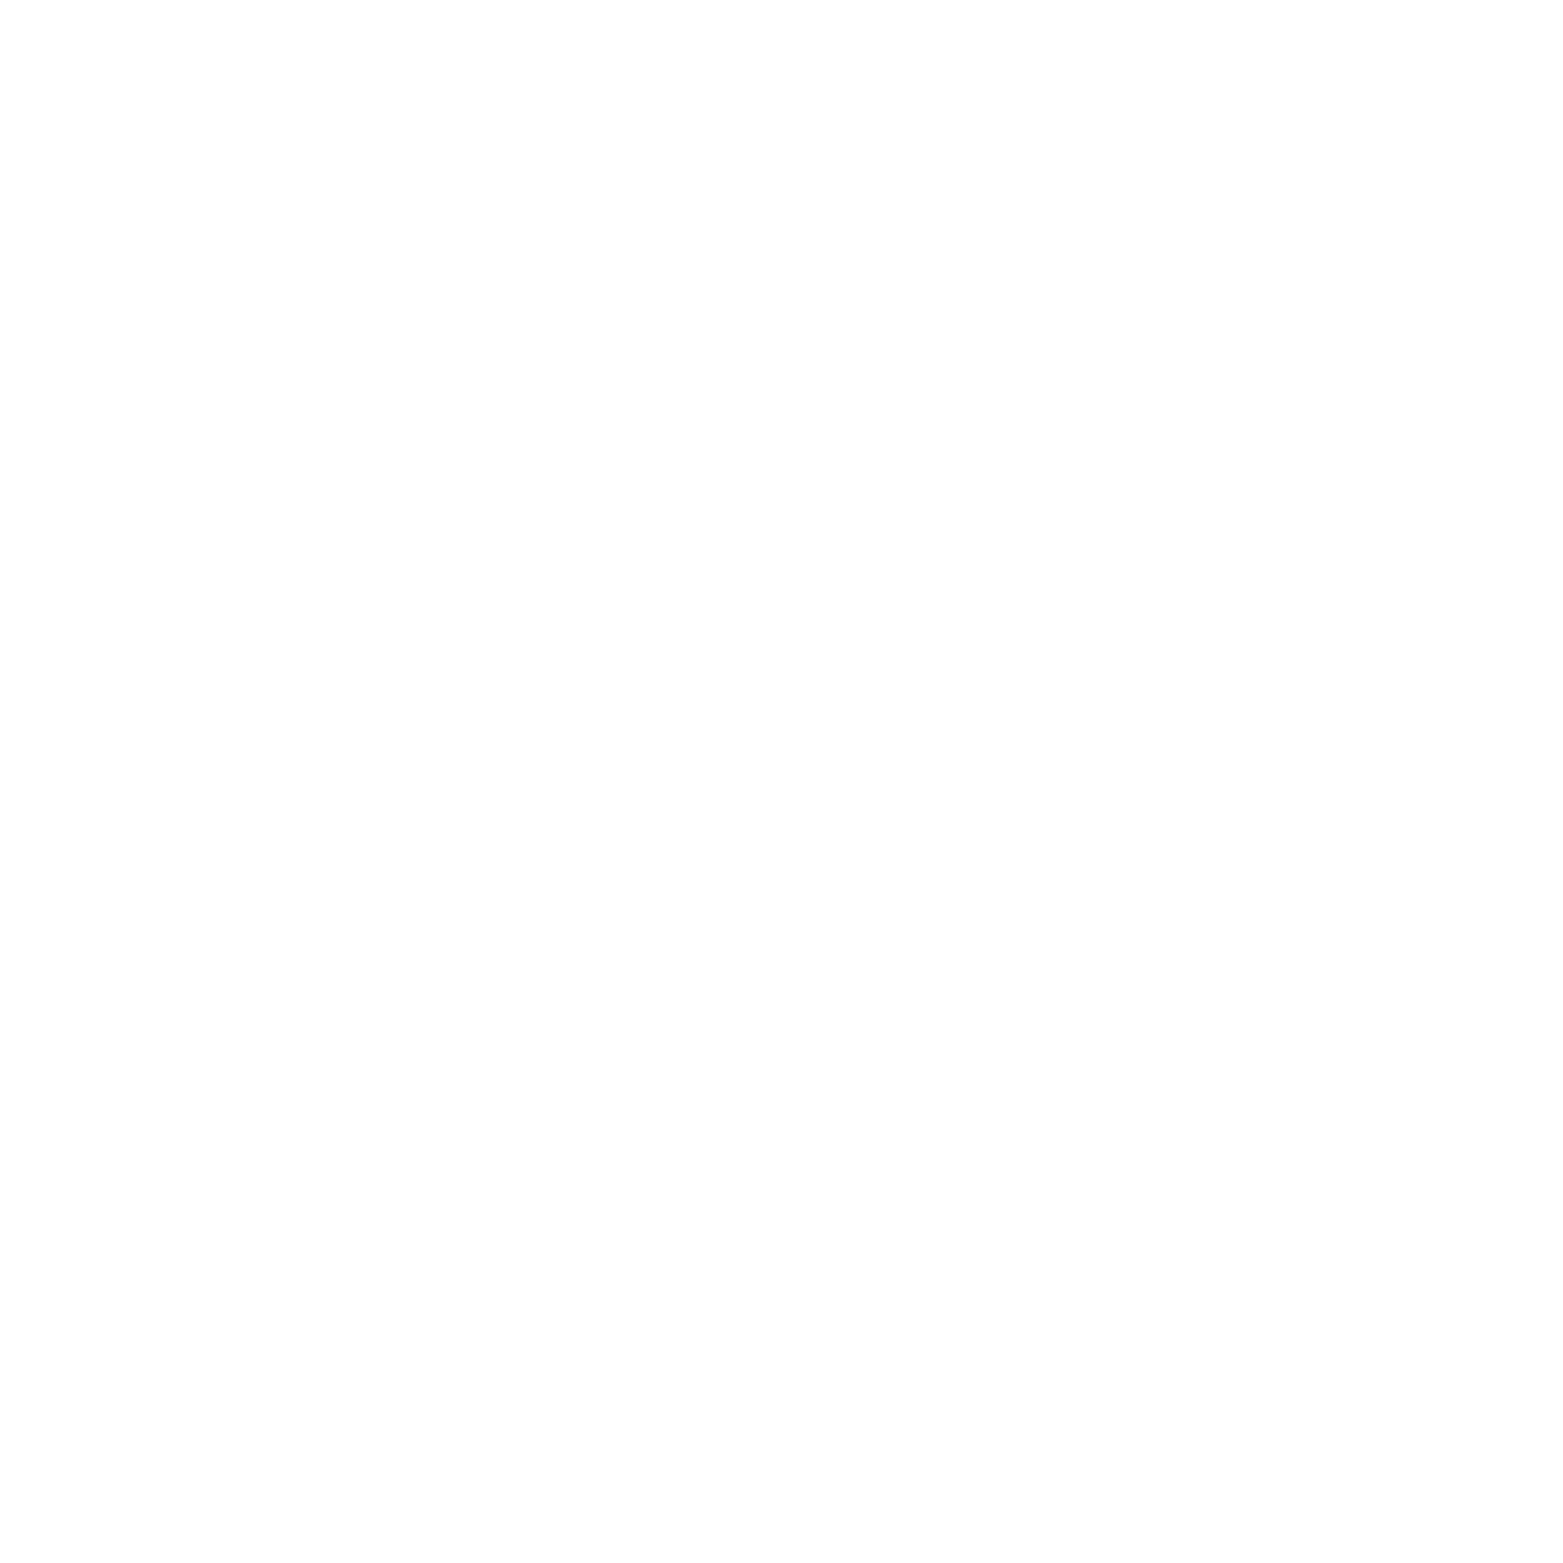 Die Alpakas der Sundelranch in Wittnau – wittnau-alpaca.ch